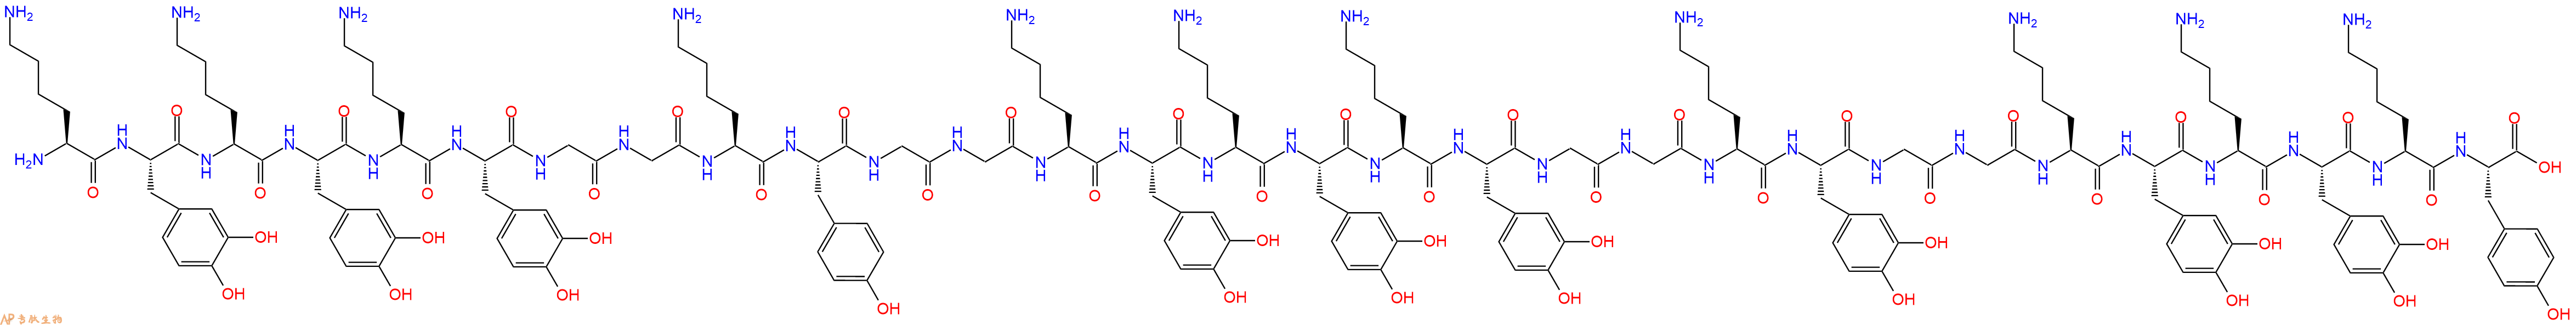 专肽生物产品Lys-DOPA-Lys-DOPA-Lys-DOPA-Gly-Gly-Lys-Tyr-Gly-Gly